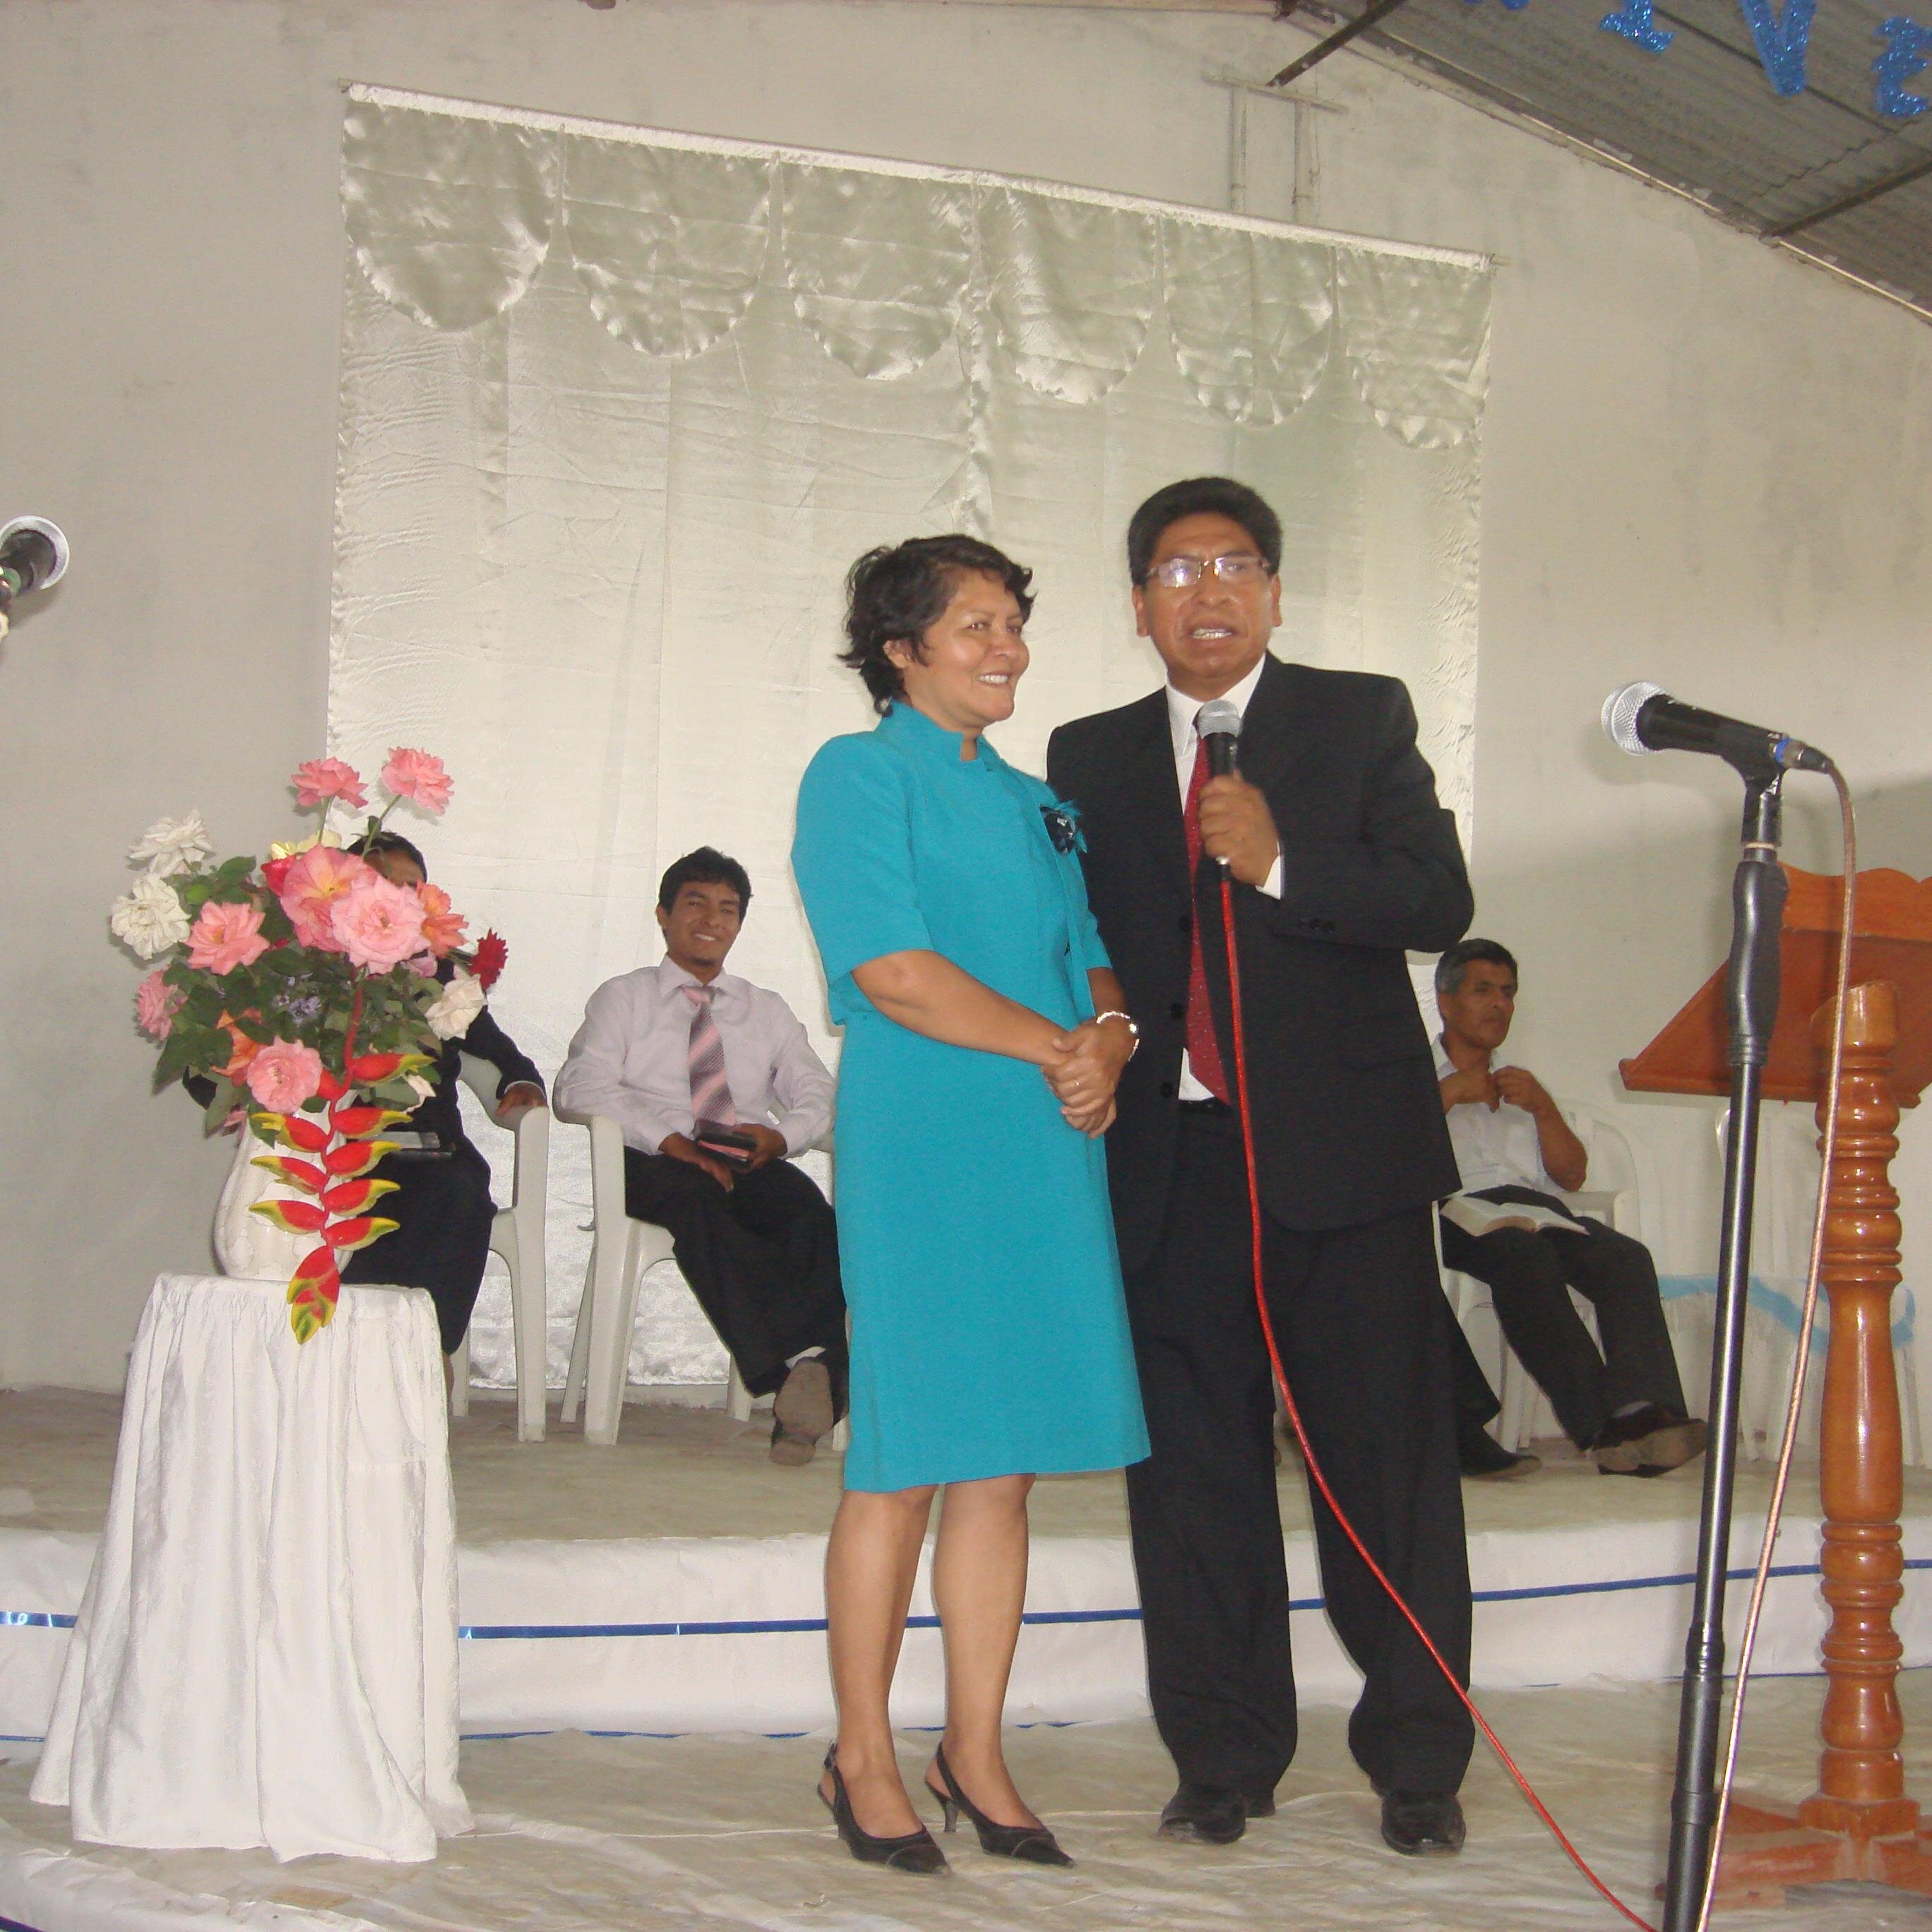 Pionero del Ministerio de Grupos Pequeños, Ministerio Celular de la Iglesia Adventista del Séptimo Día del Perú. Actualmente trabajo como pastor distrital.